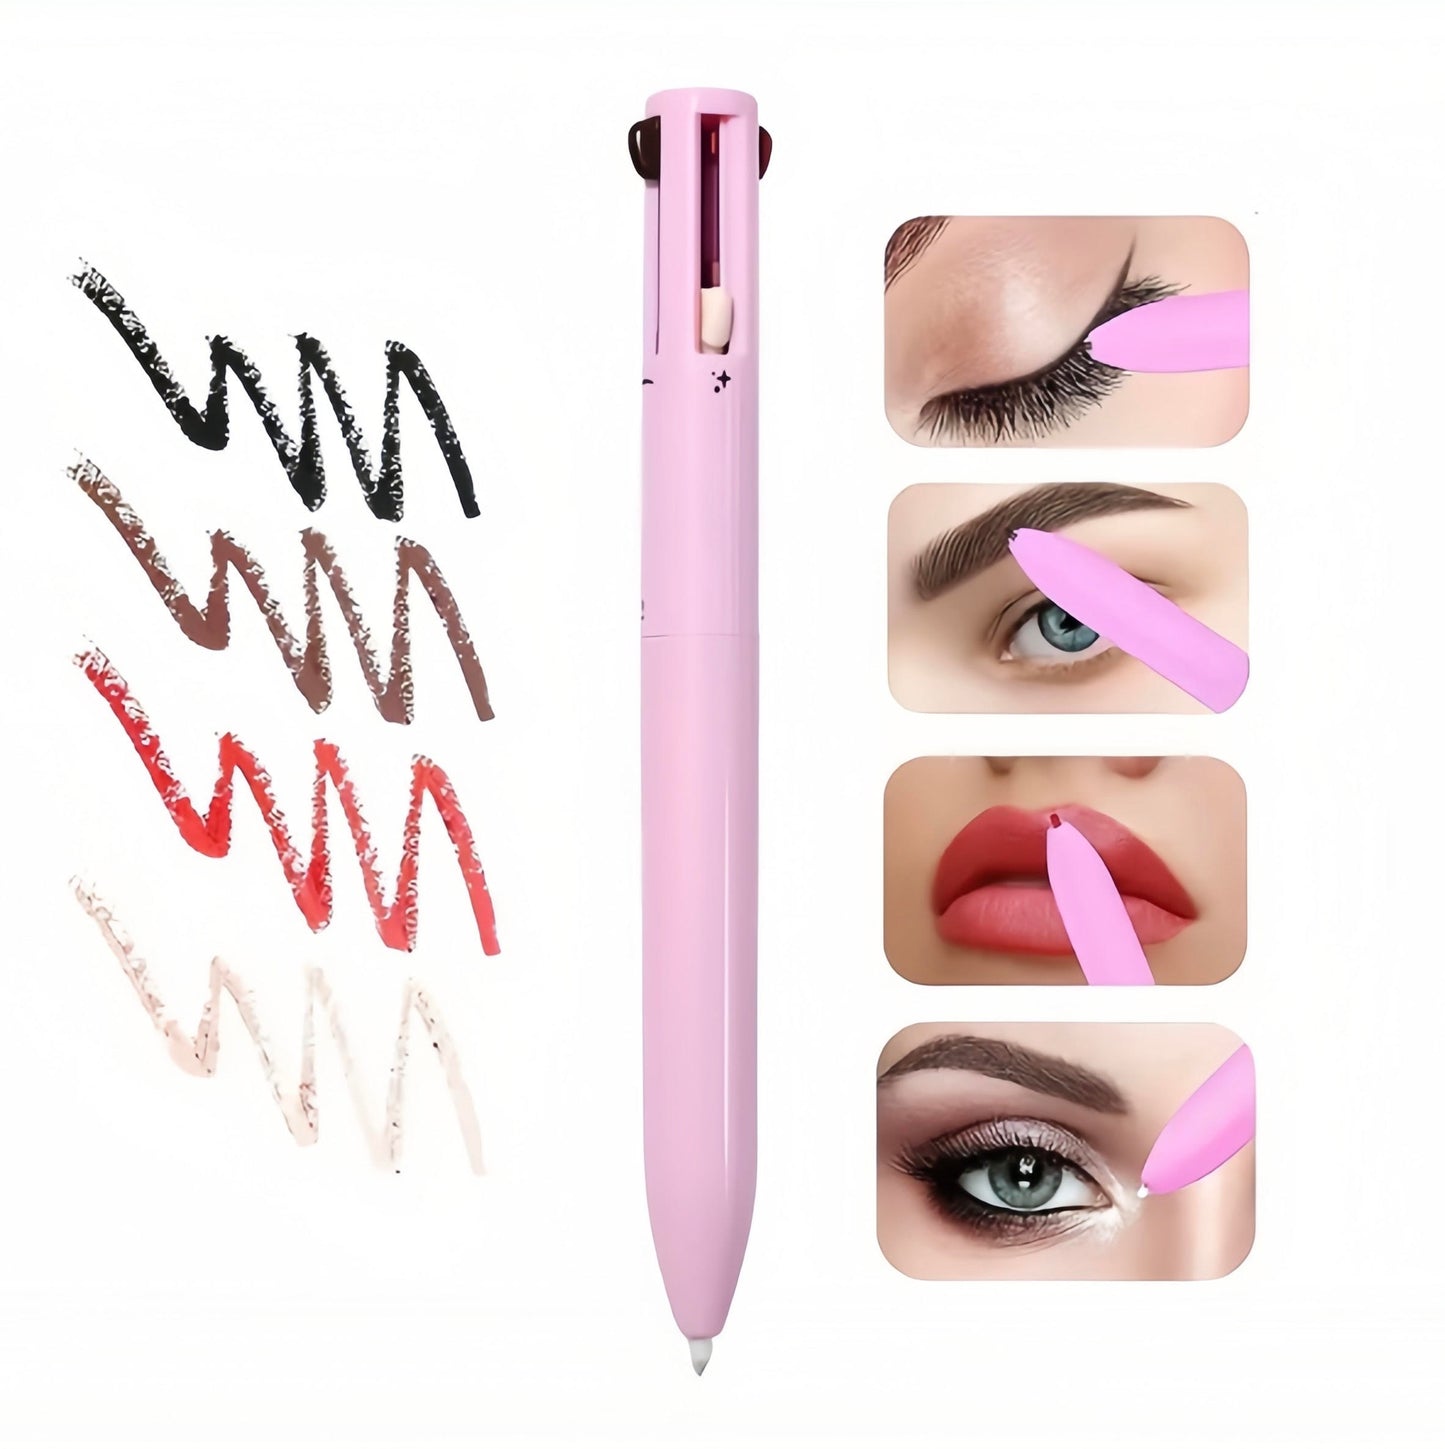 ElleVyb™ 4 In 1 Makeup Pen